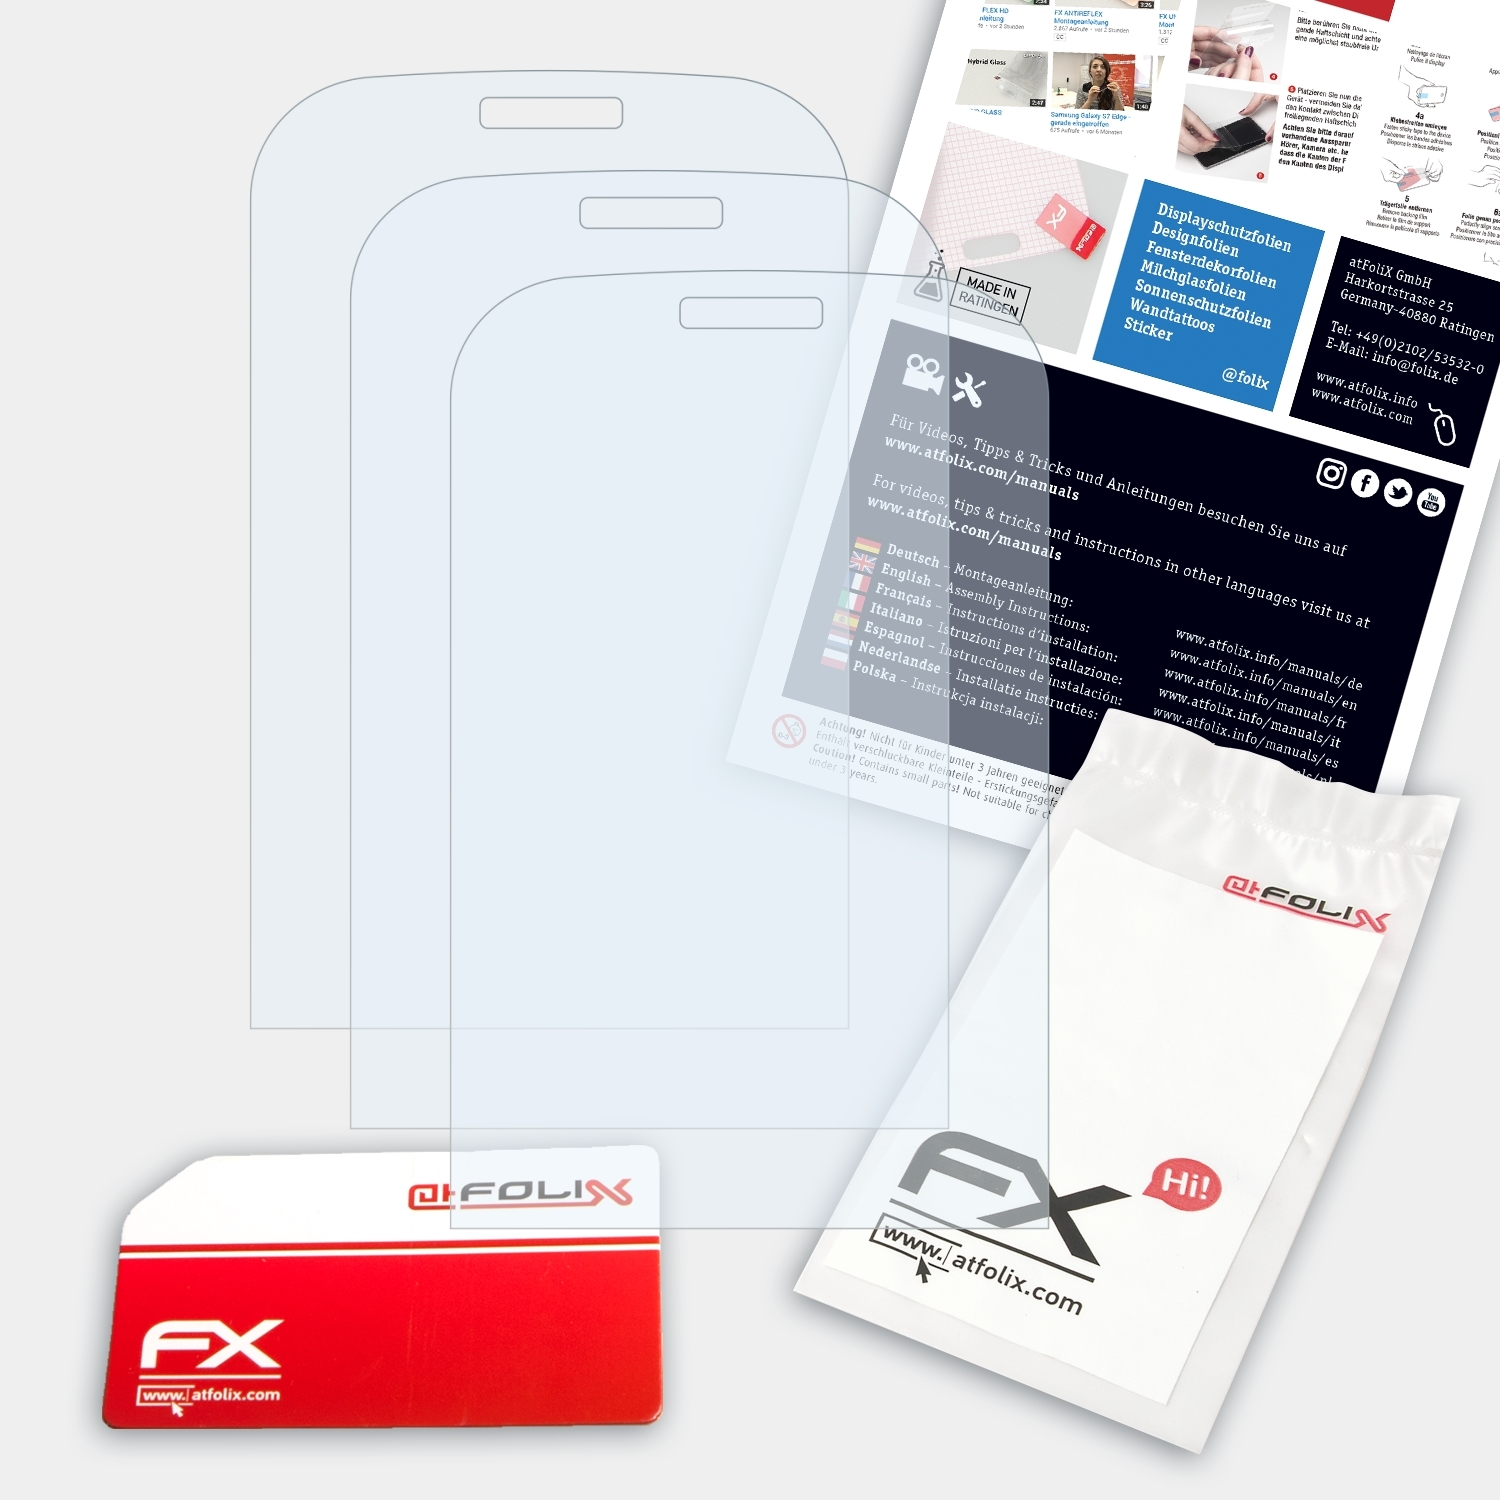 ATFOLIX 3x FX-Clear Displayschutz(für Nokia Classic) 3720